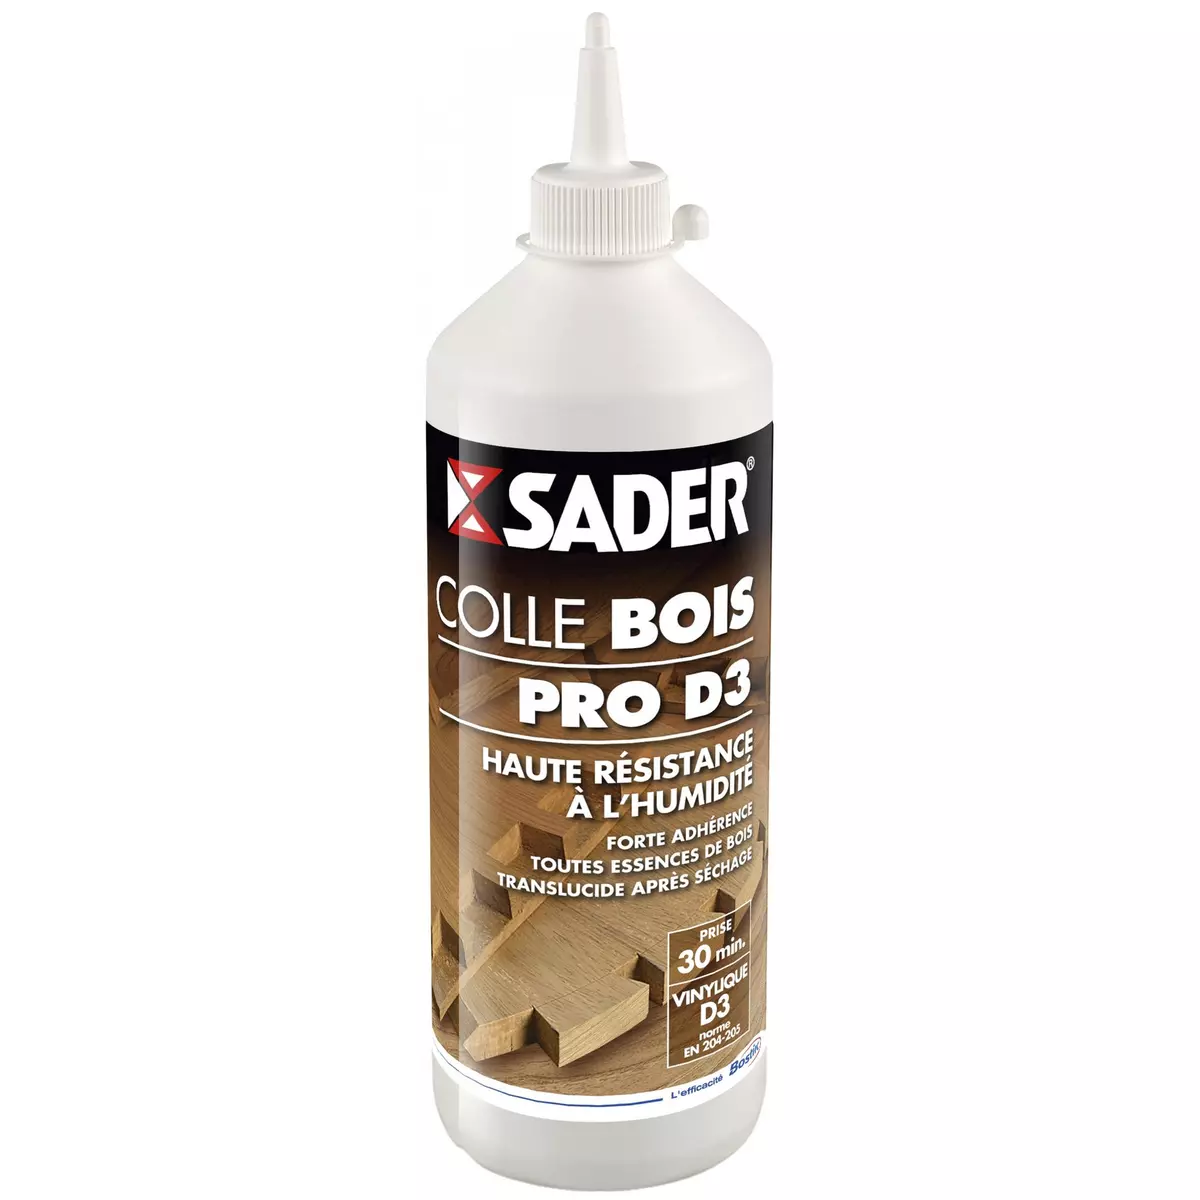 Sader Colle à bois progressive Pro d3 SADER, 750 g